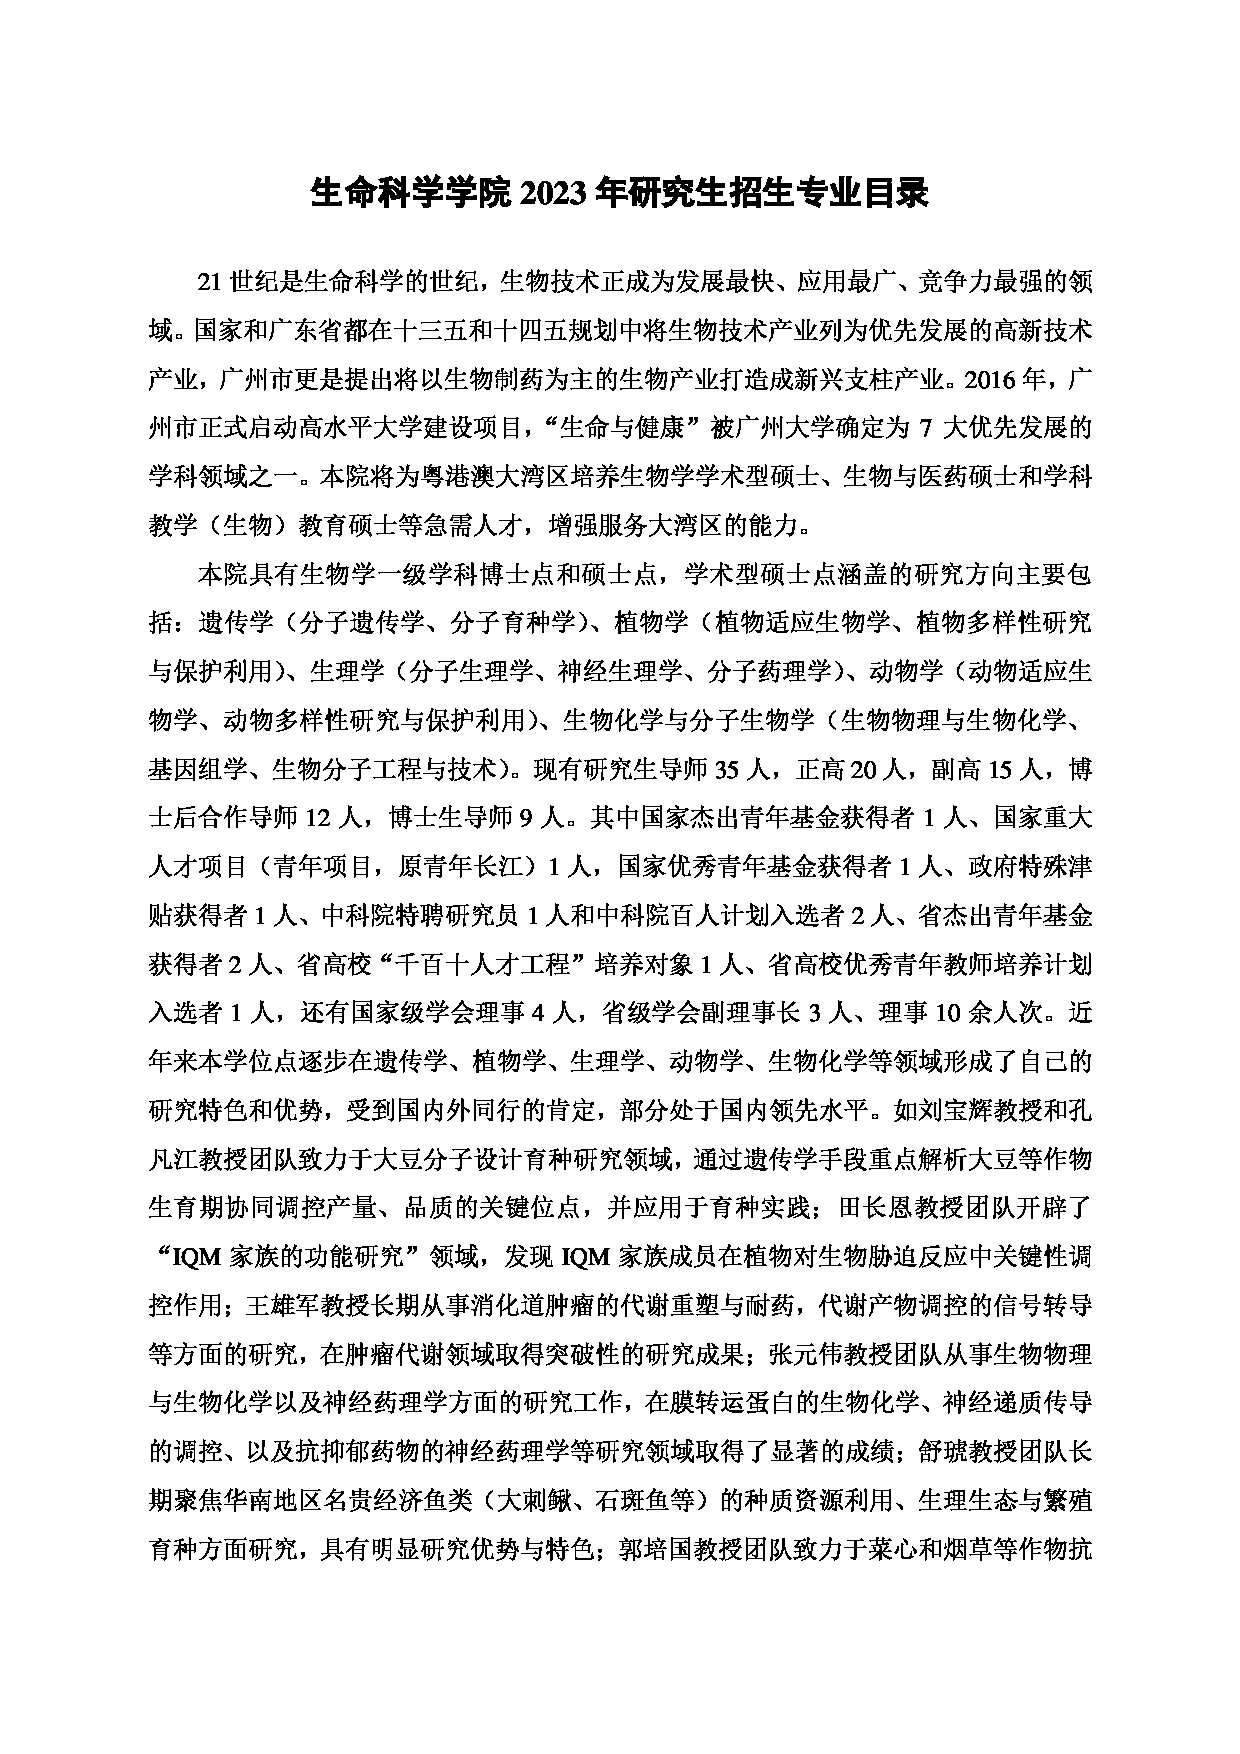 2023招生目录：广州大学2023年  17生命科学学院 研究生考试招生目录第1页